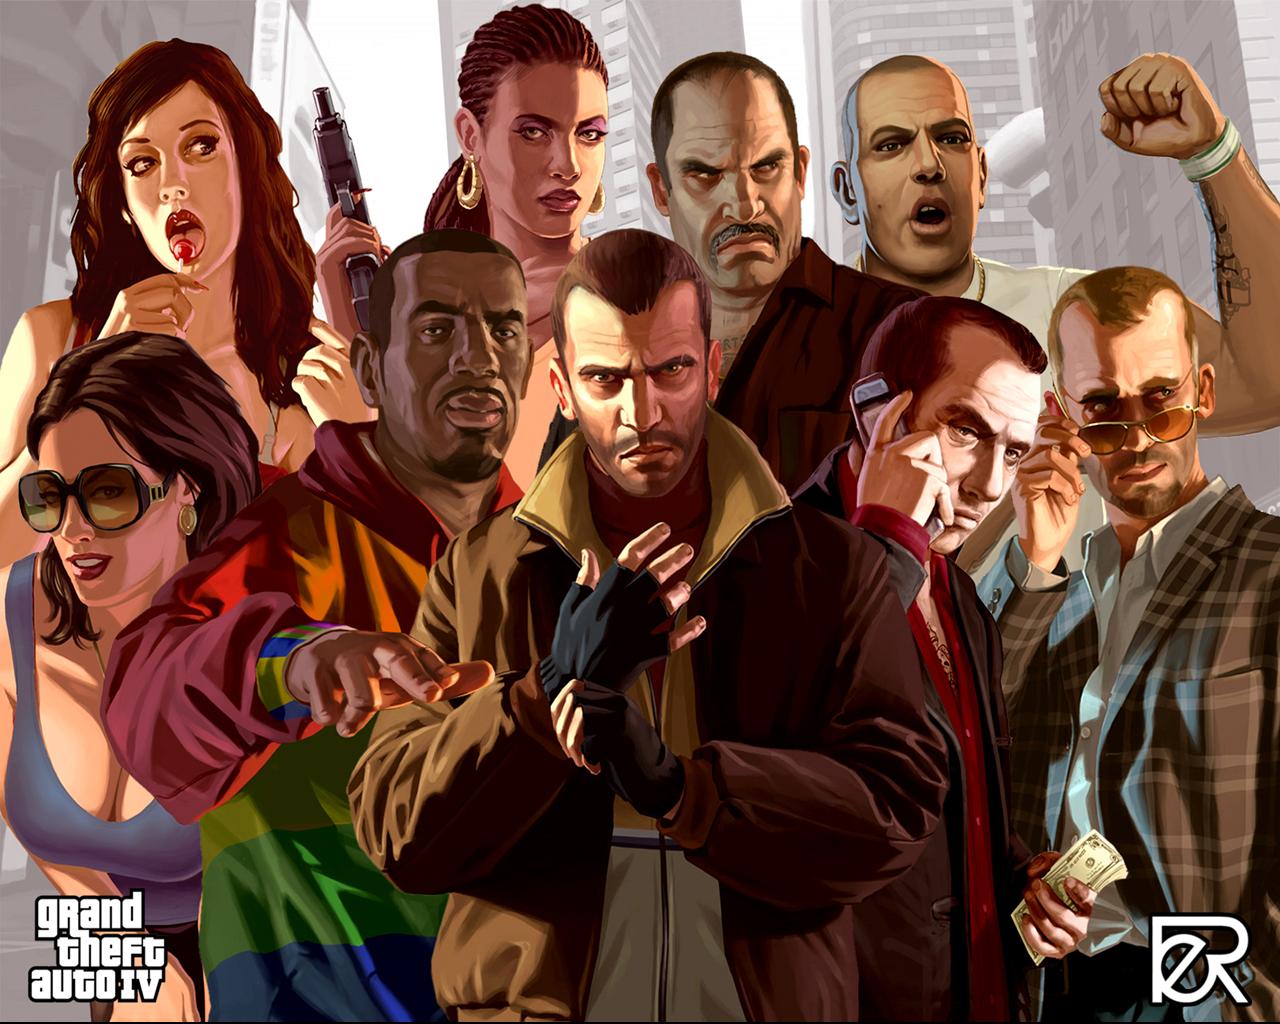 Fondos de Pantalla Grand Theft Auto GTA 4 Juegos descargar imagenes